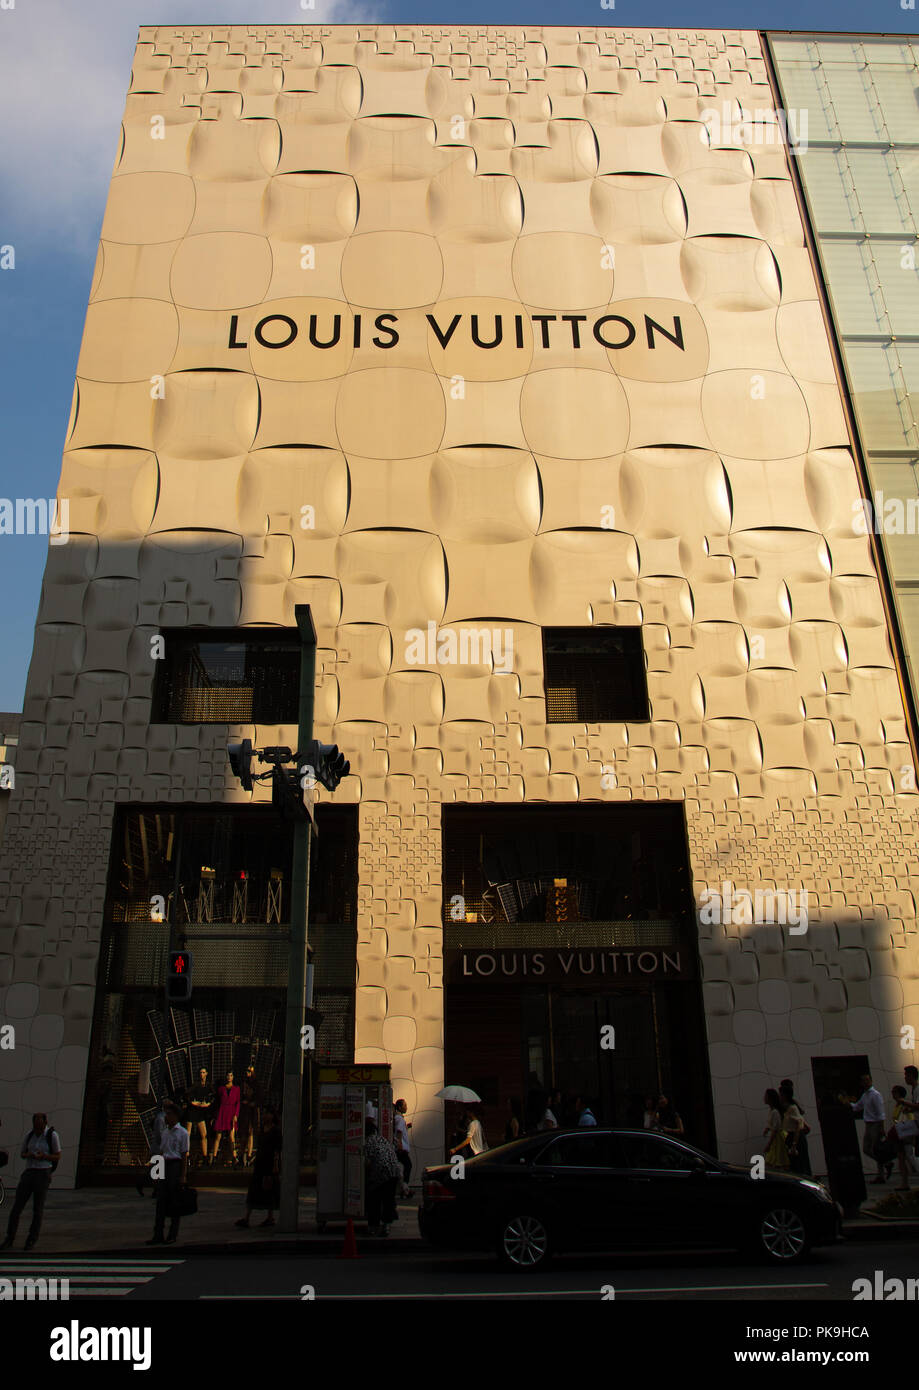 LAS VEGAS - APRIL 13 : Exterior Of A Louis Vuitton Store In